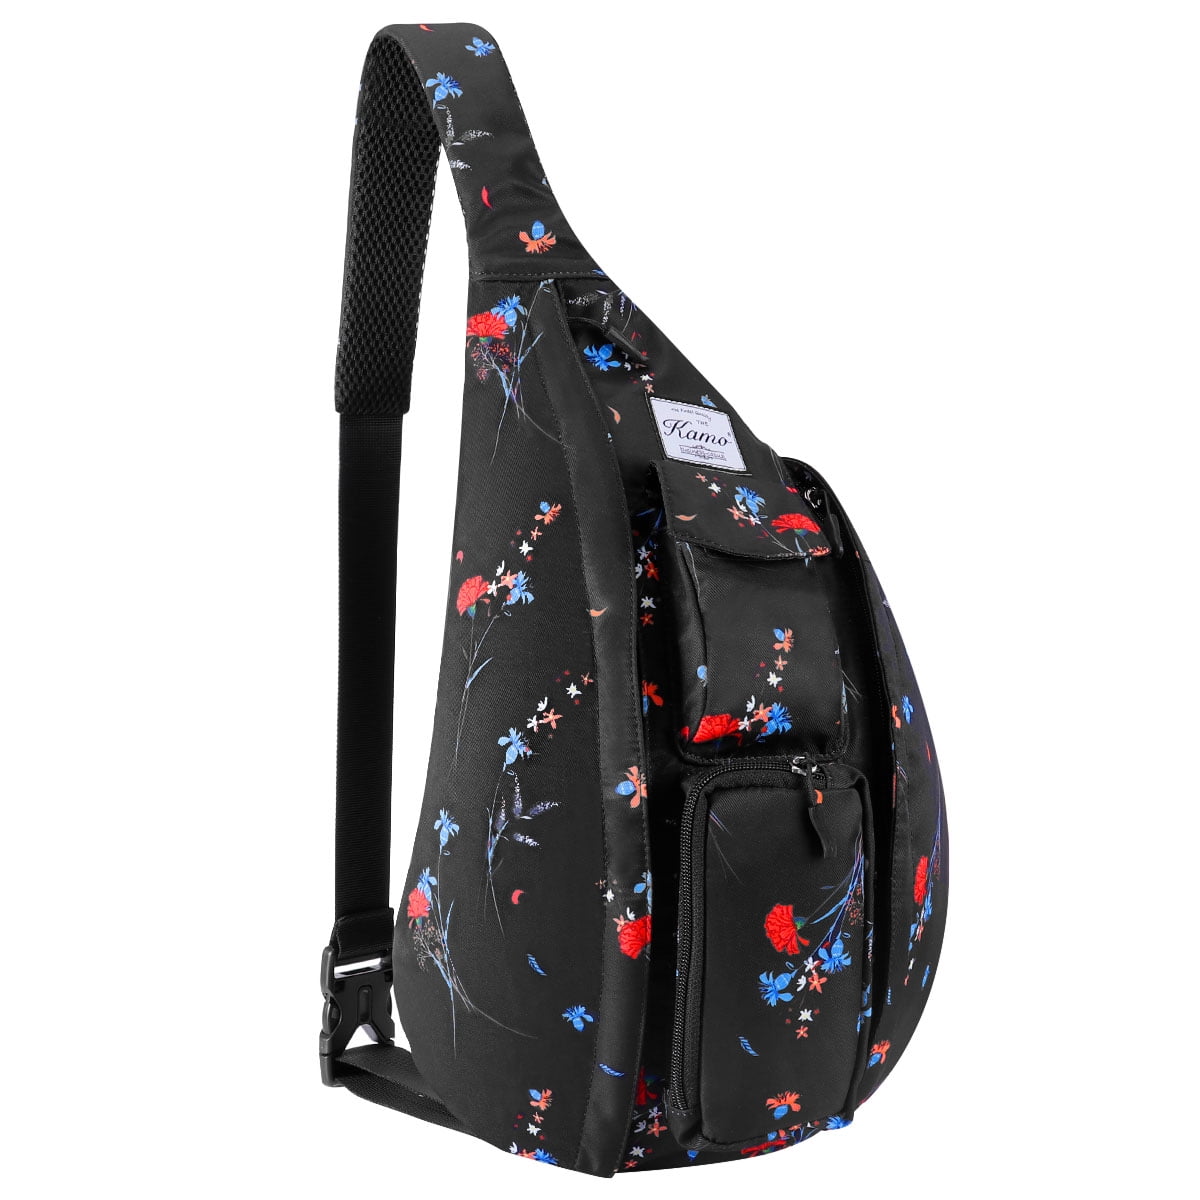 Kamo Sling Backpack Rope Bag Crossbody Backpack Travel Multipurpose Daypacks for Men Women Lady Girl Teens 